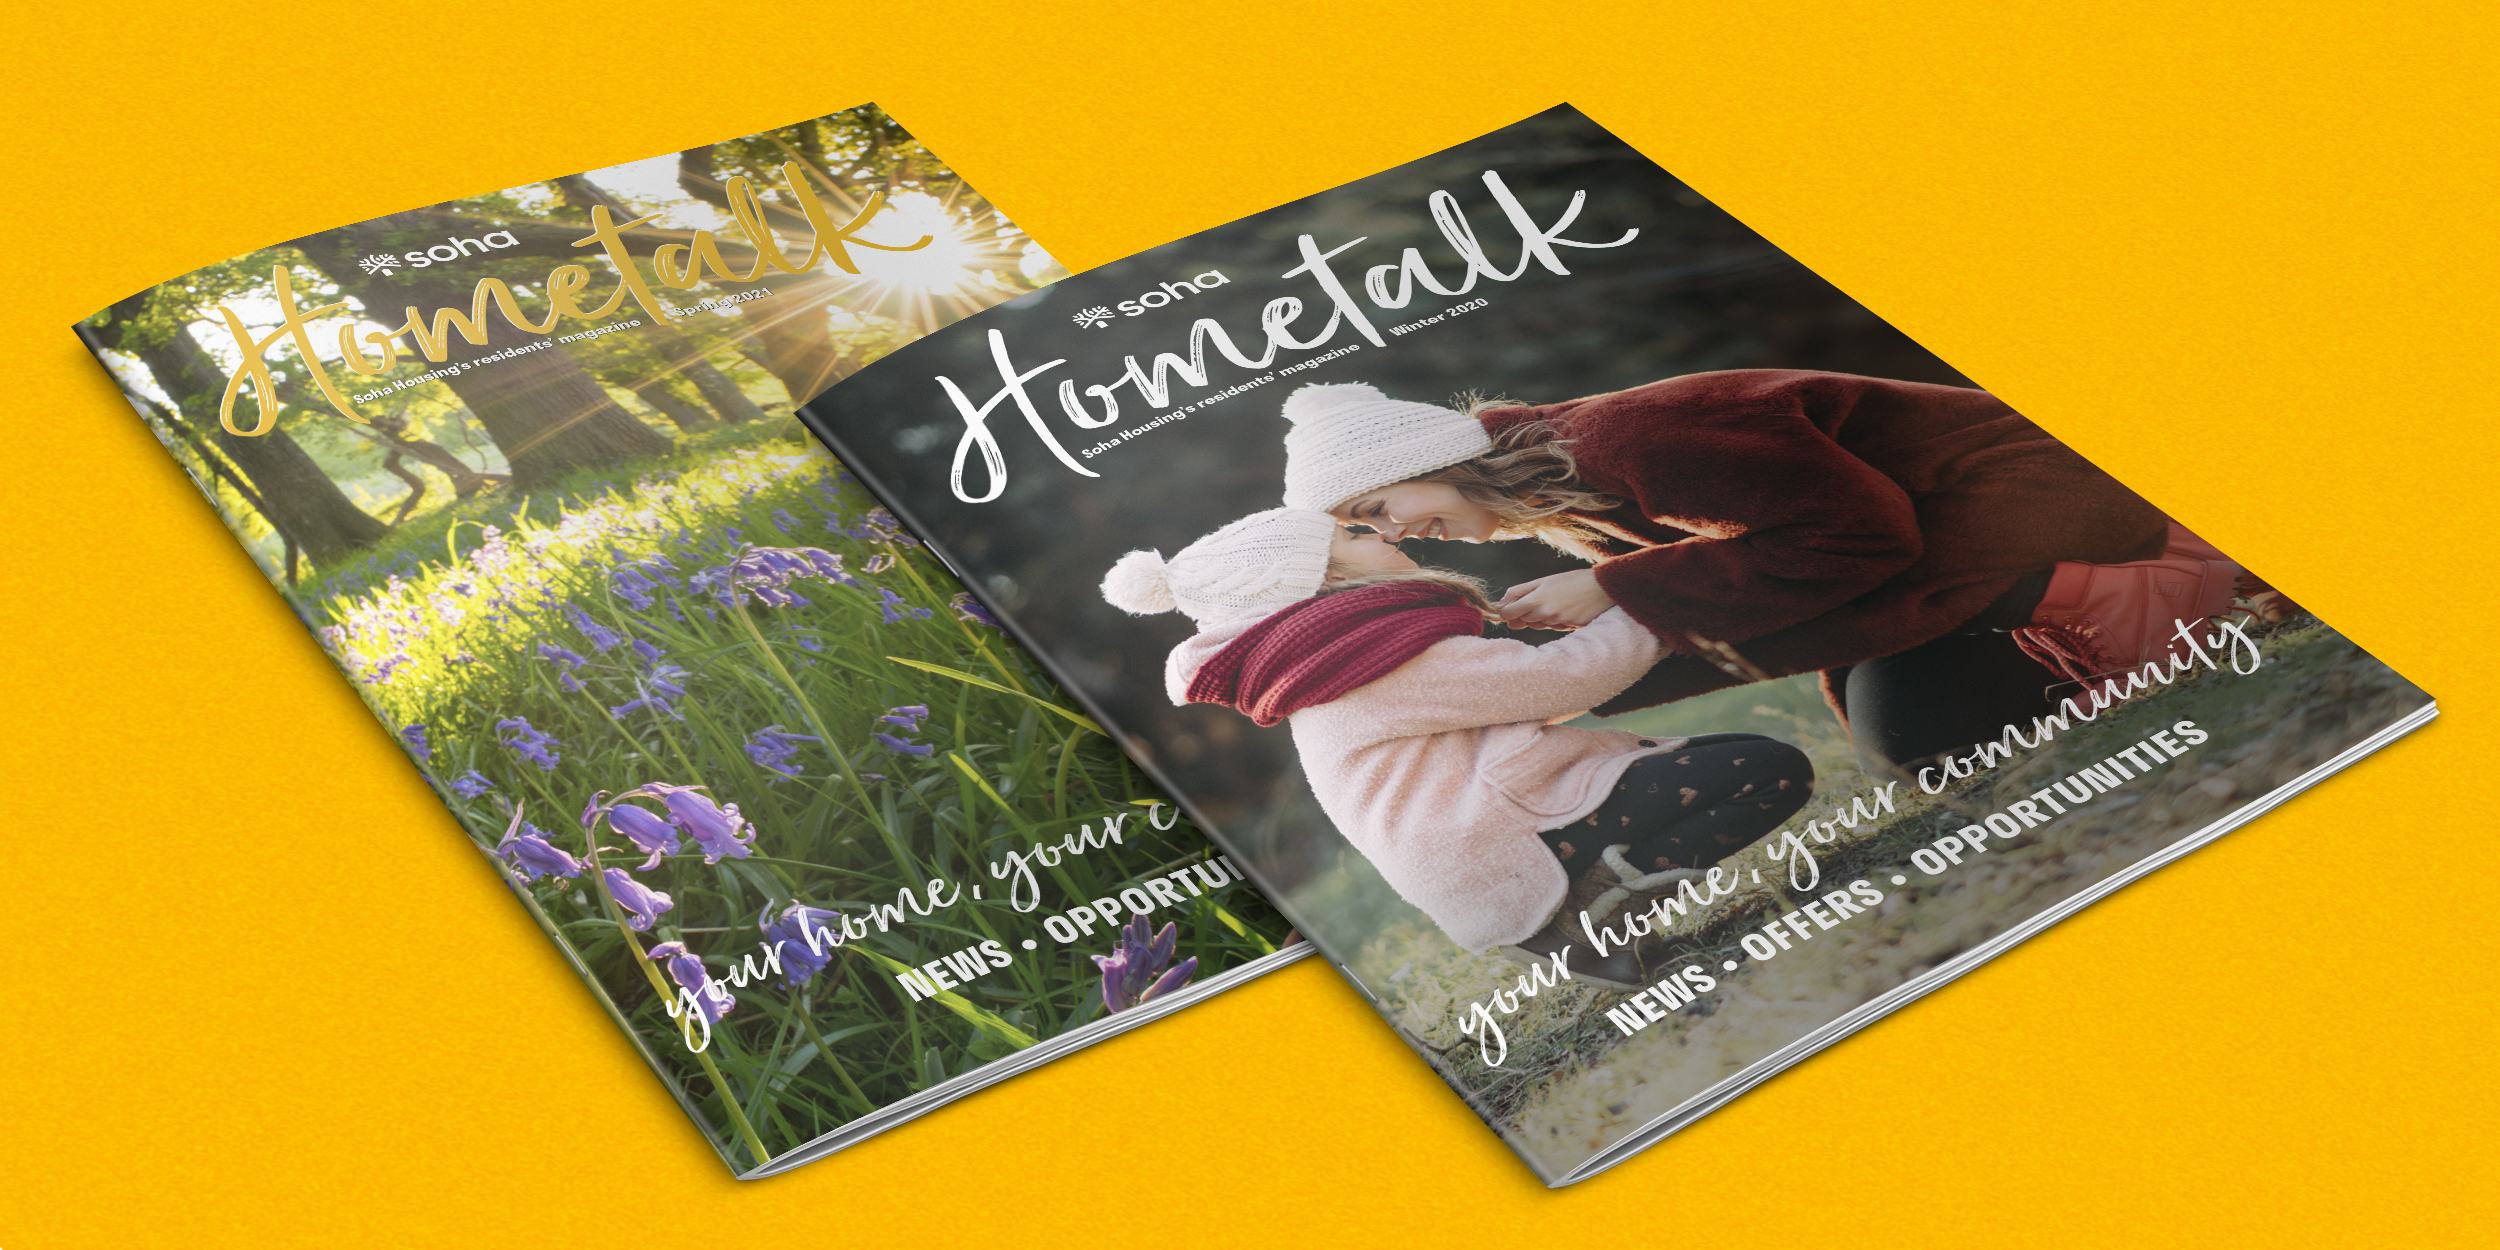 Soha Hometalk - Community Magazine